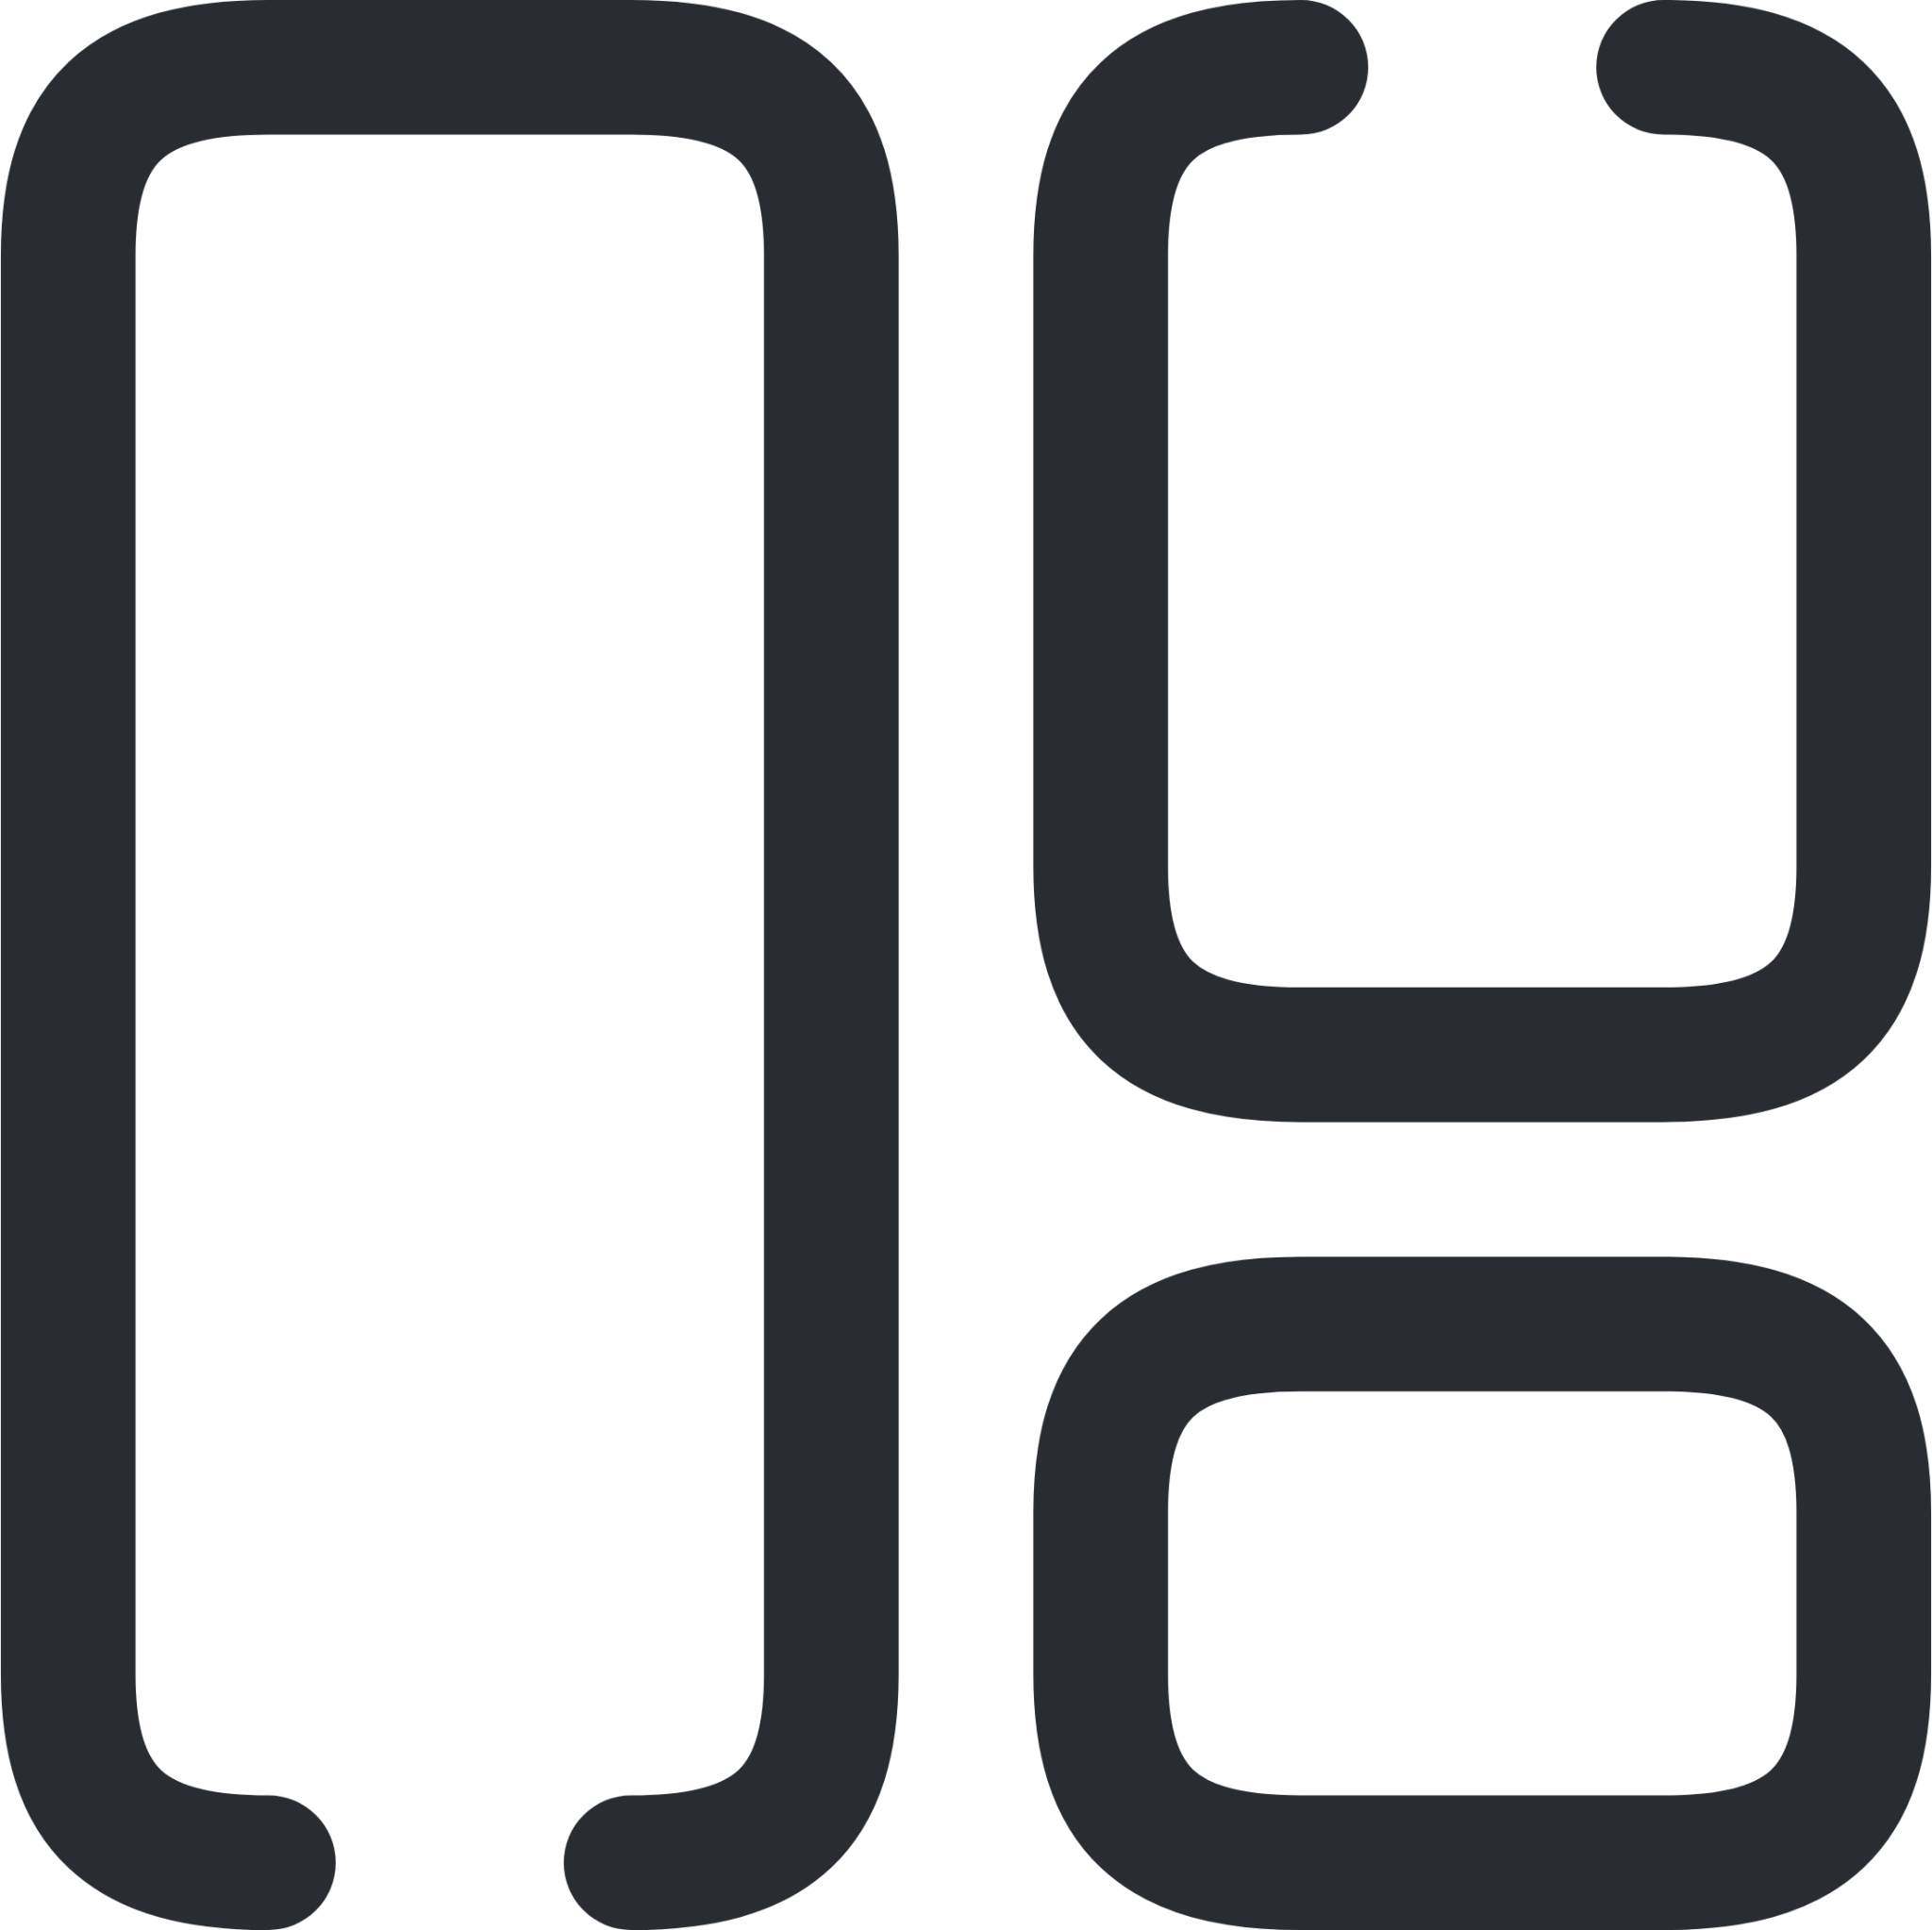 element 2 icon